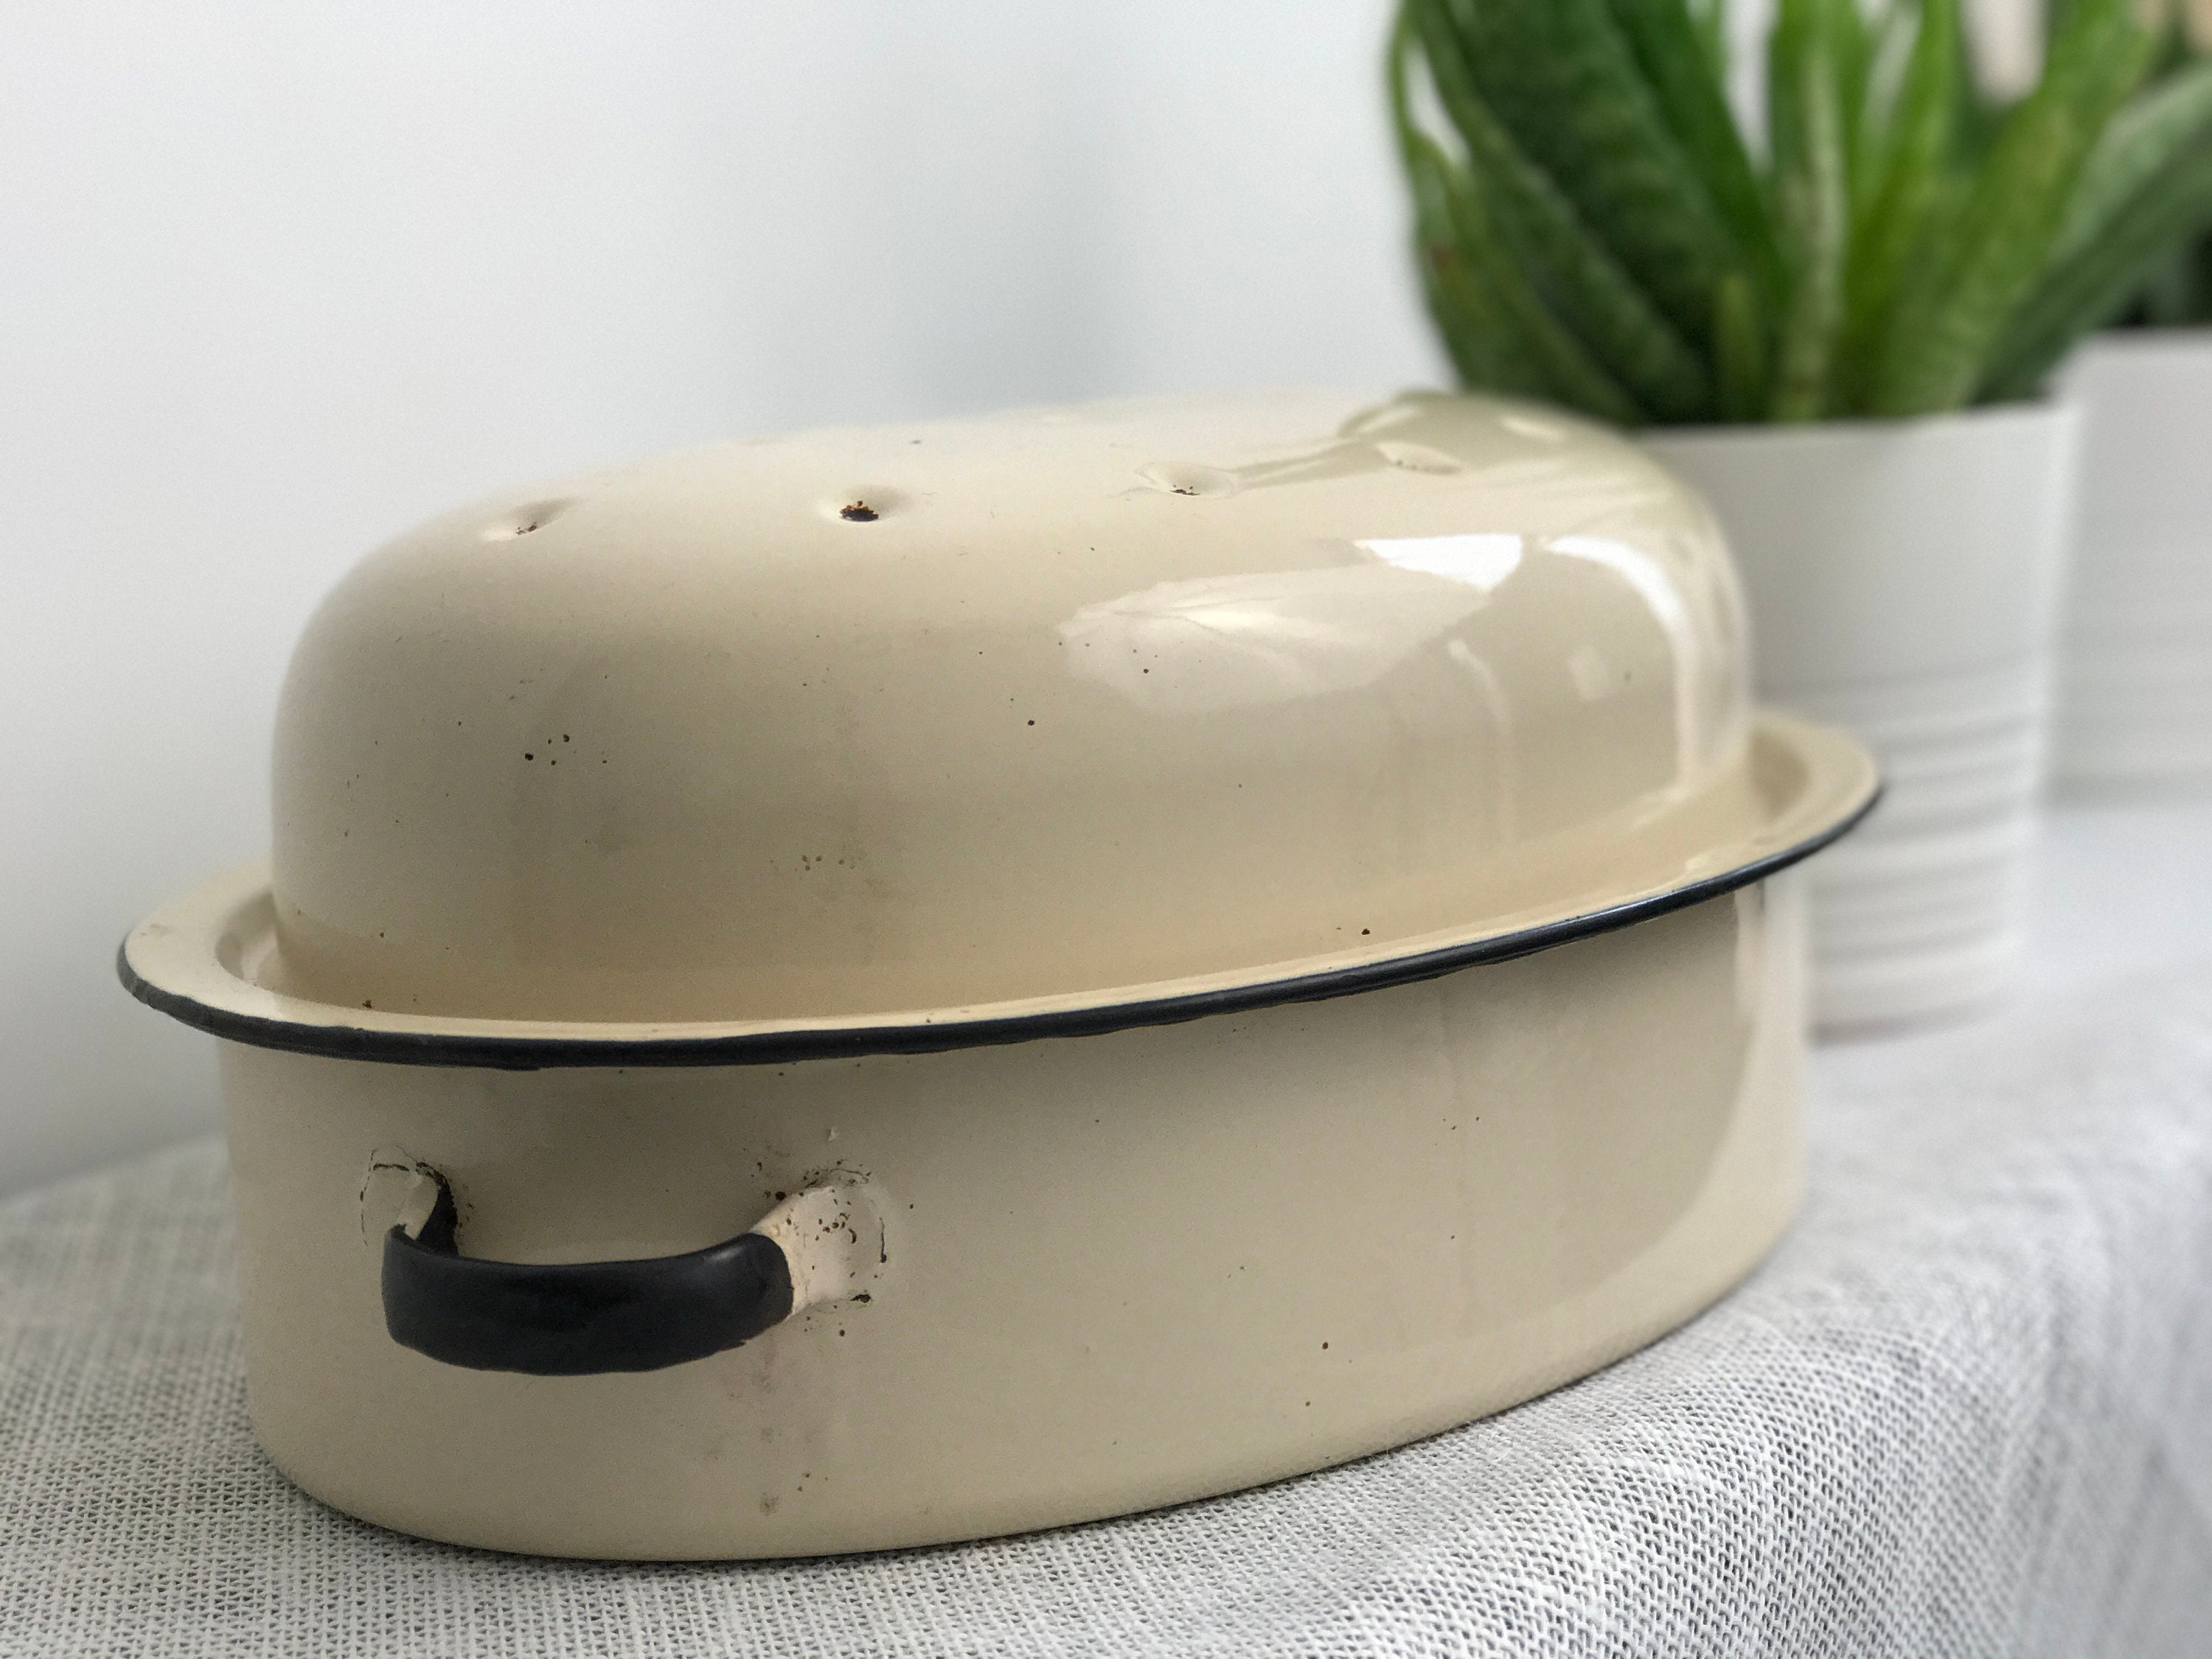 Vintage Cream Enamelware | Vintage Kitchen Enamel Oven ...